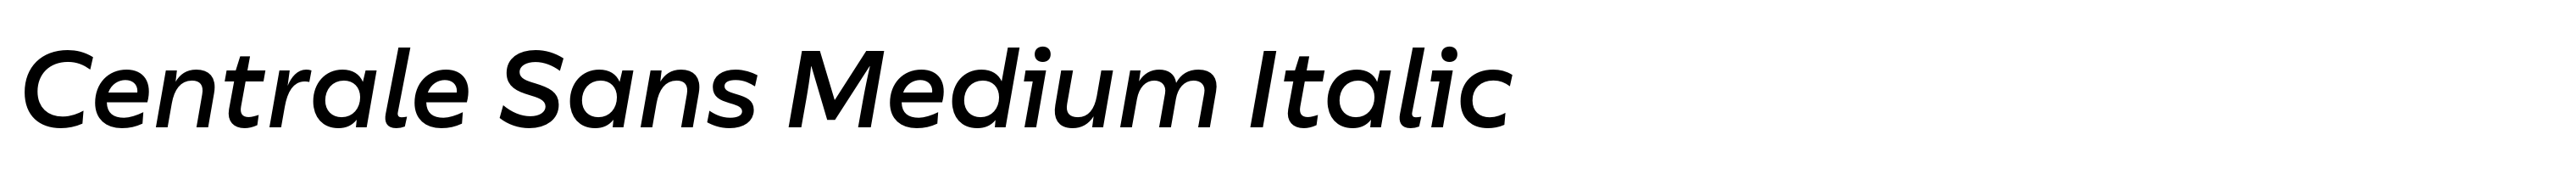 Centrale Sans Medium Italic